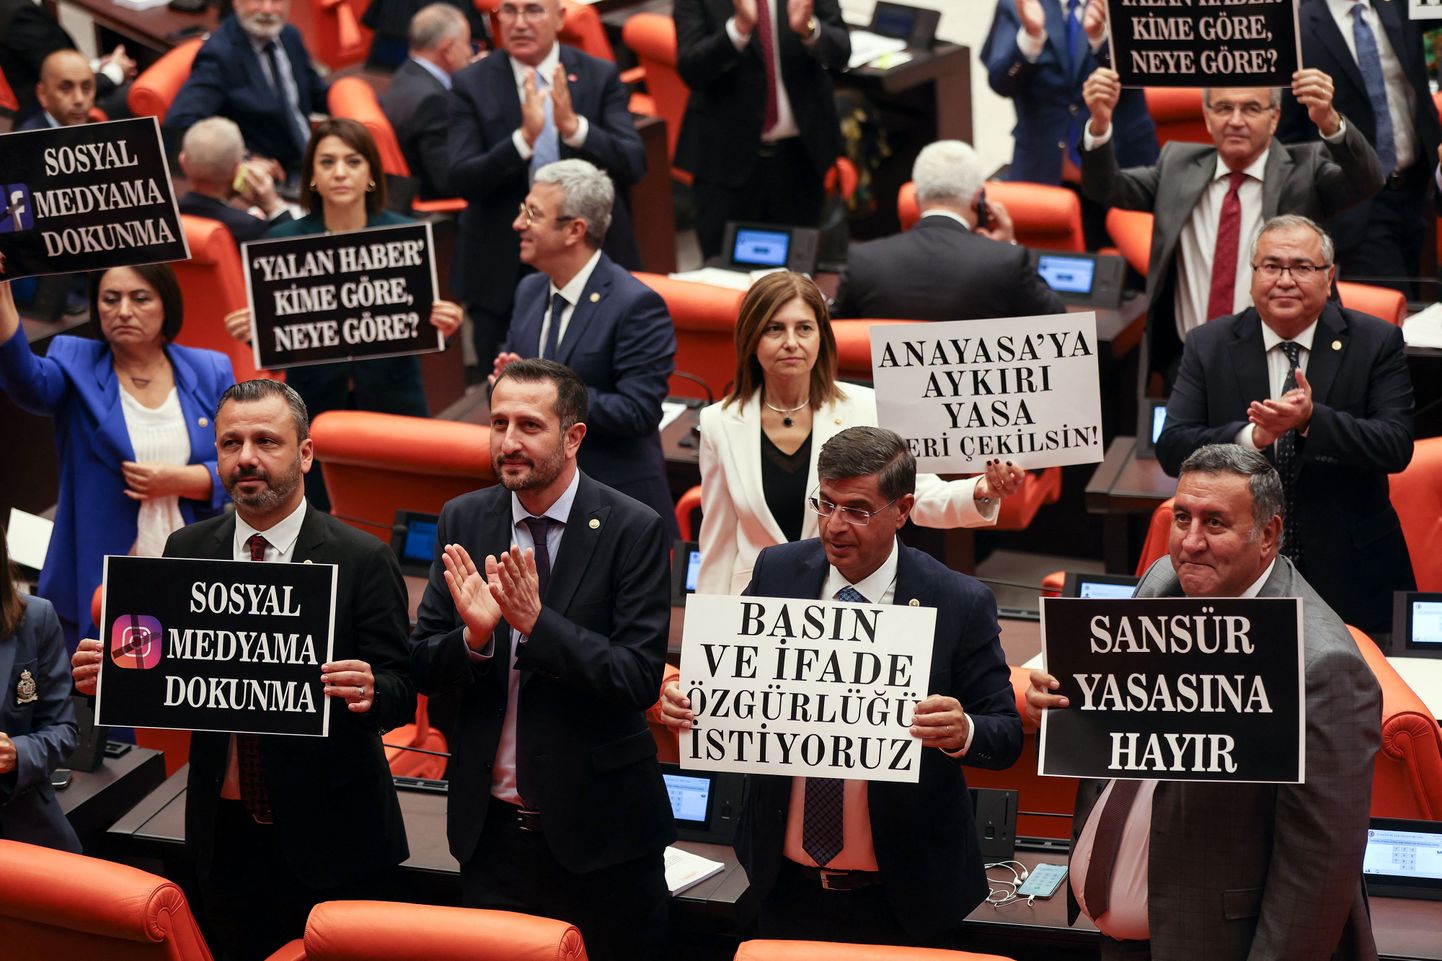 Türgi opositsiooniline Vabariiklik Rahvapartei (CHP) siltidega parlamendis näitamaks oma vastuseisu valitsuse esitatud väärinfot käsitlevale meediaseadusele, 4. oktoobril 2022. a.